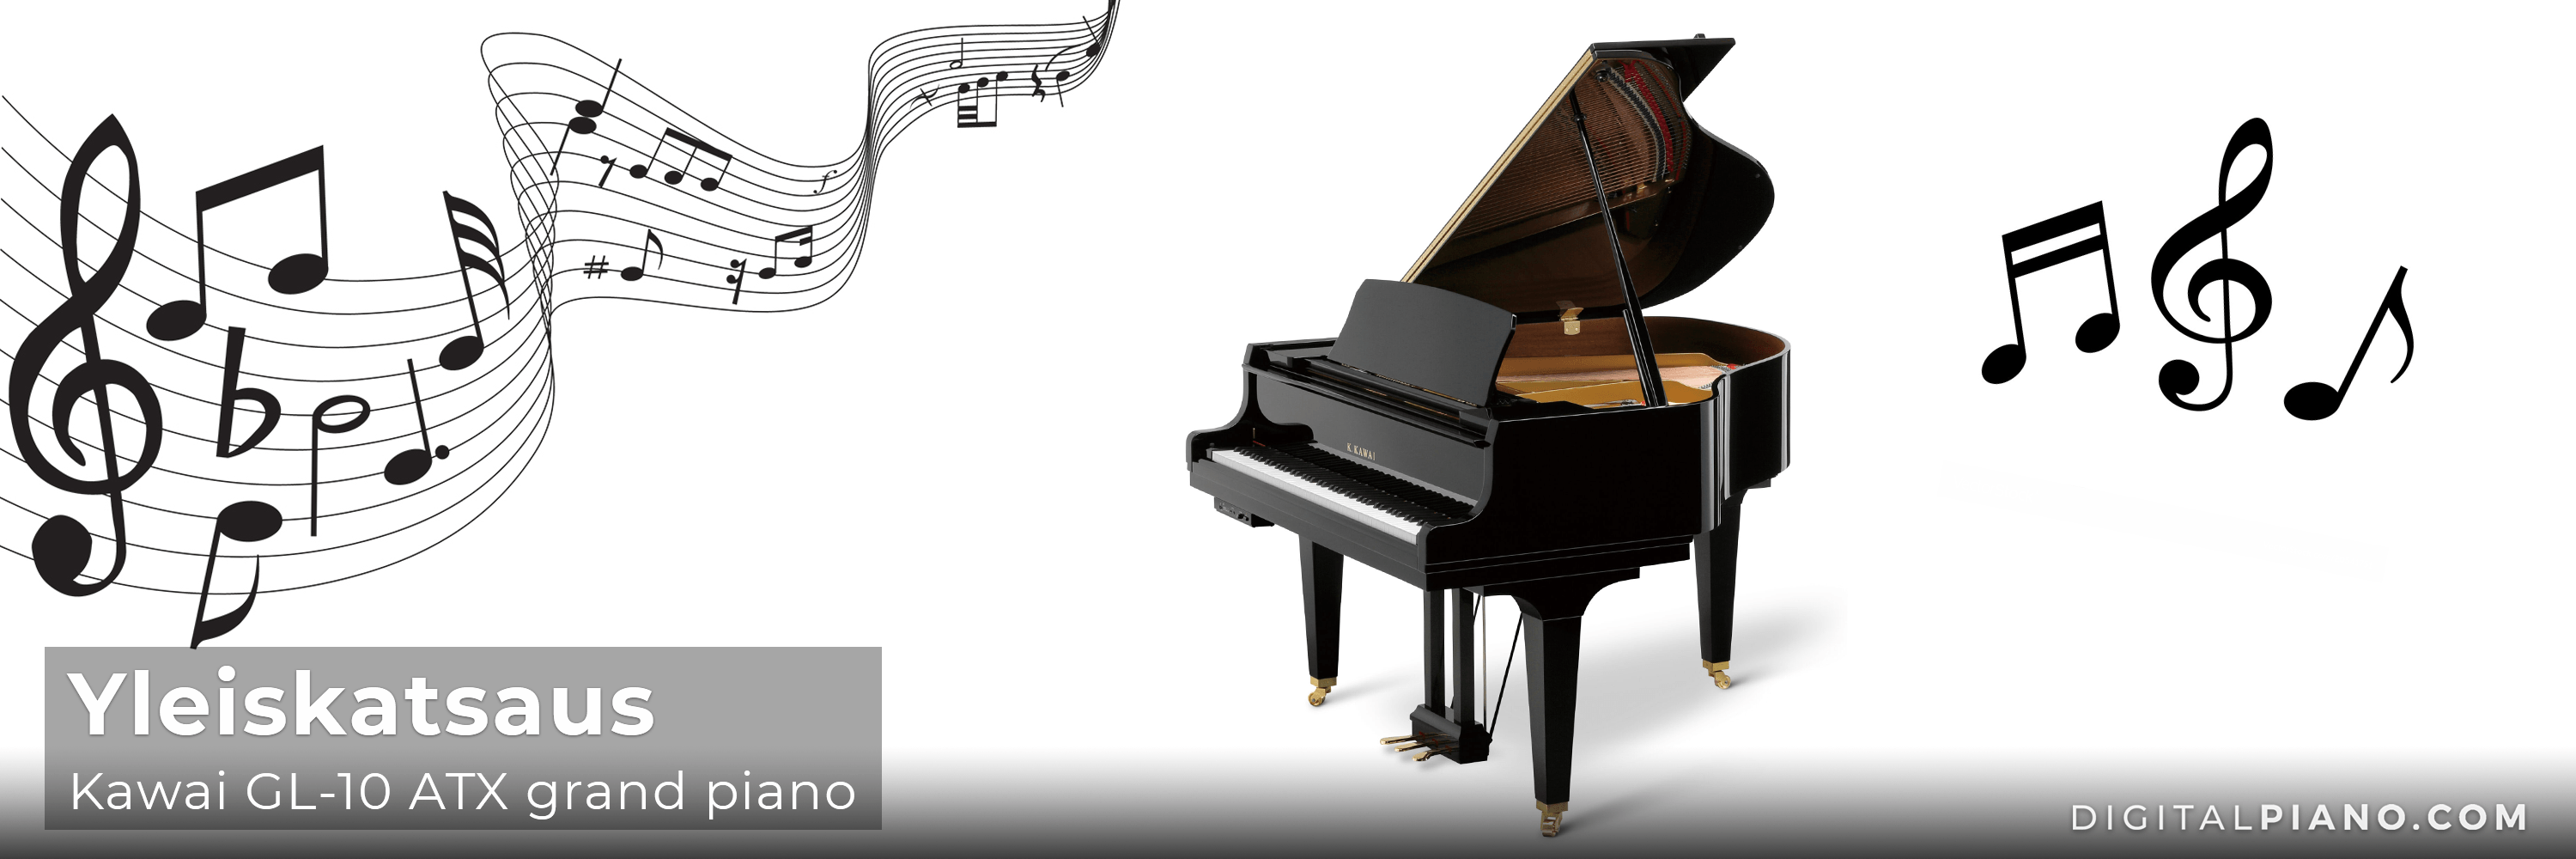 Yleiskatsaus - Kawai GL-10 ATX grand piano